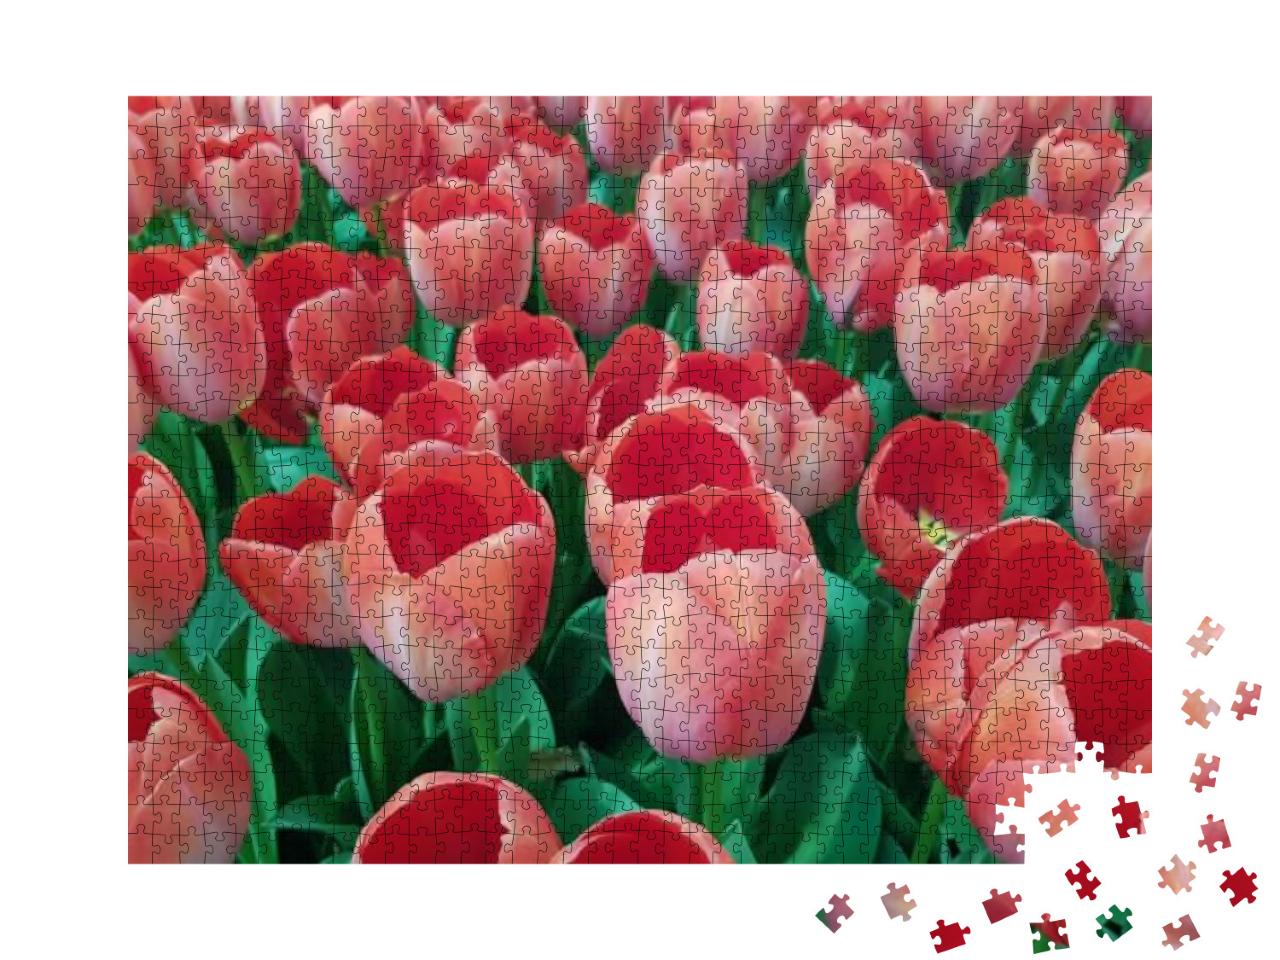 Puzzle 1000 Teile „Hübsche pfirsichfarbene Tulpen mit strahlend grünen Blättern auf einem Feld“